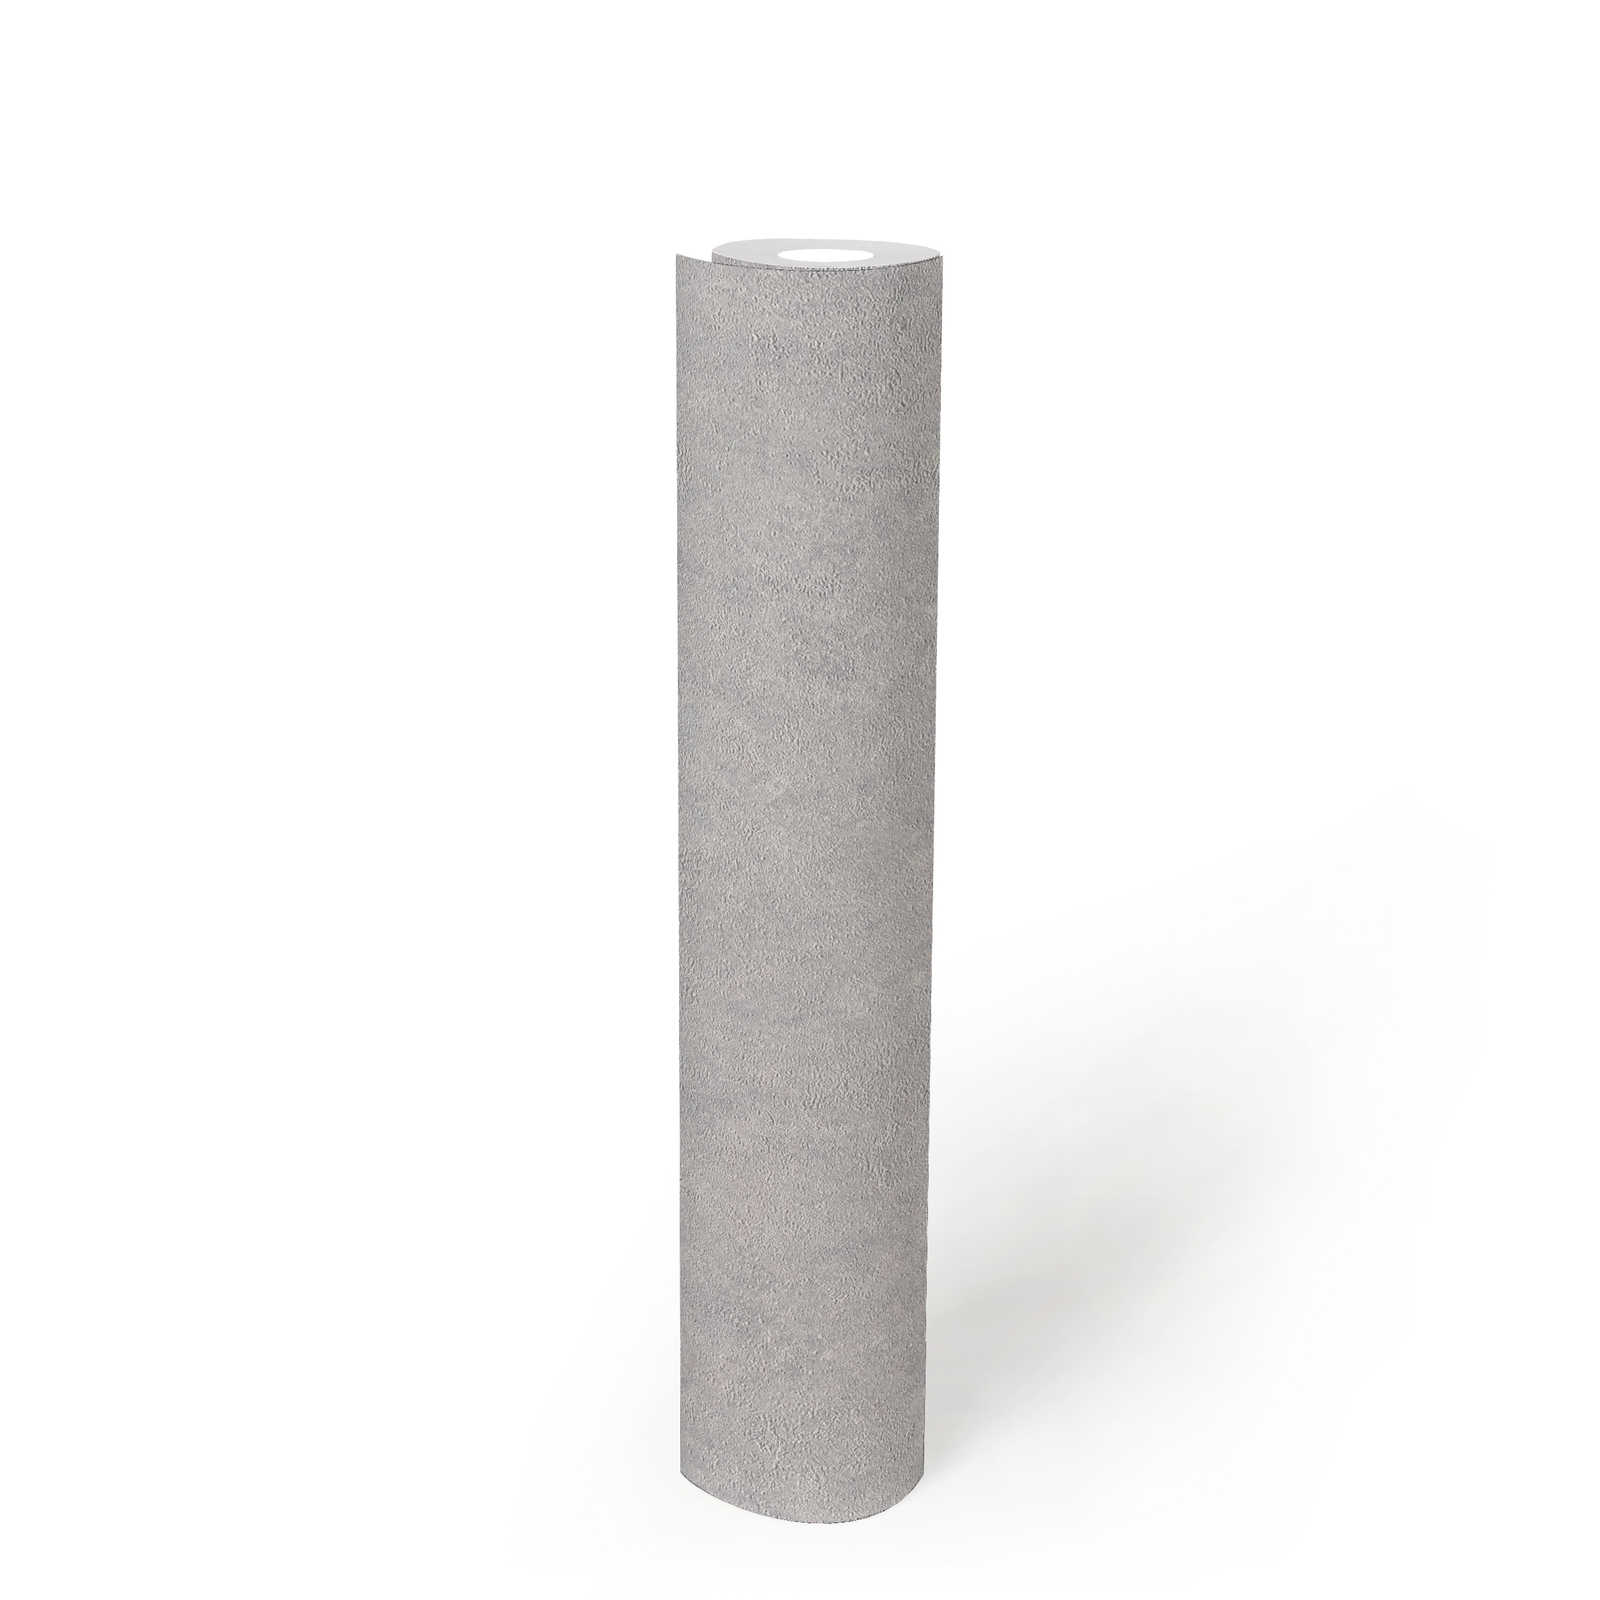             Einfarbige Strukturtapete glänzend mit Metalliceffekt – Grau, Silber
        